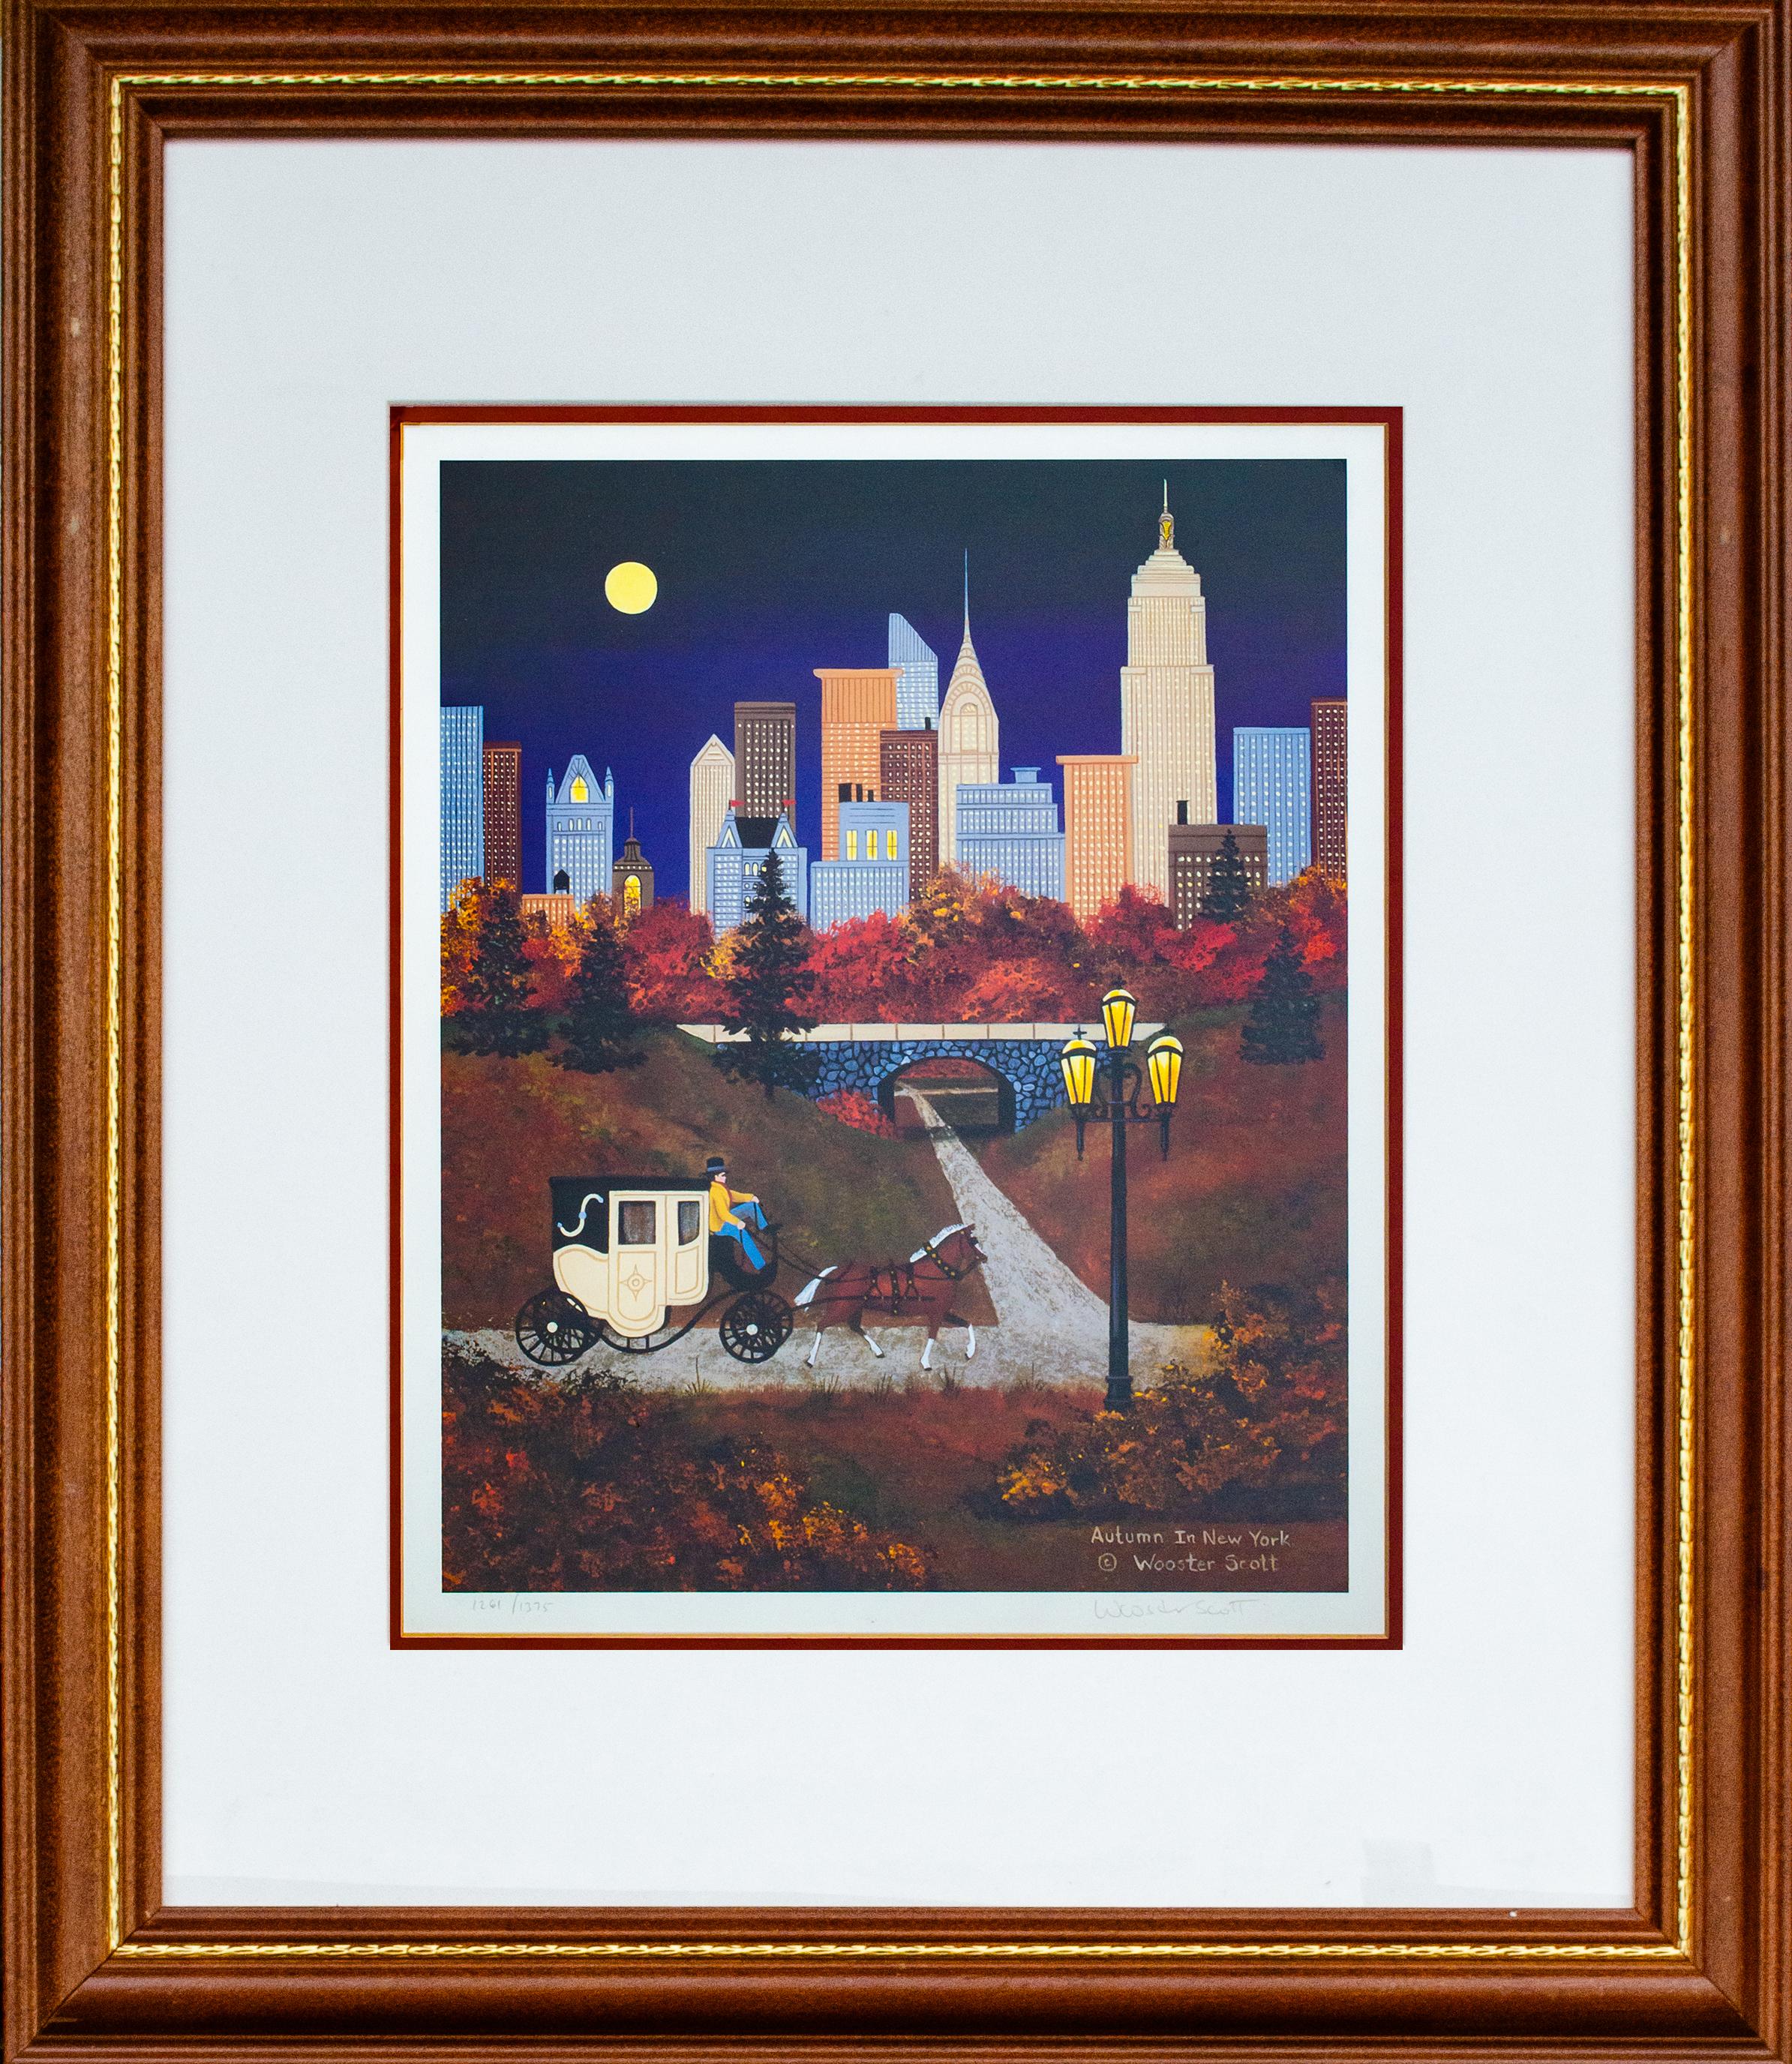 Jane Wooster Scott (américaine, née en 1920)
Automne à New York, c. C. C.
Lithographie
Vue : 15 x 12 in.
Encadré : 27 3/4 x 23 3/4 x 1 in.
Signé et titré en bas à droite dans la plaque : Autumn in New York (c) Wooster Scott.
Signé au crayon en bas à